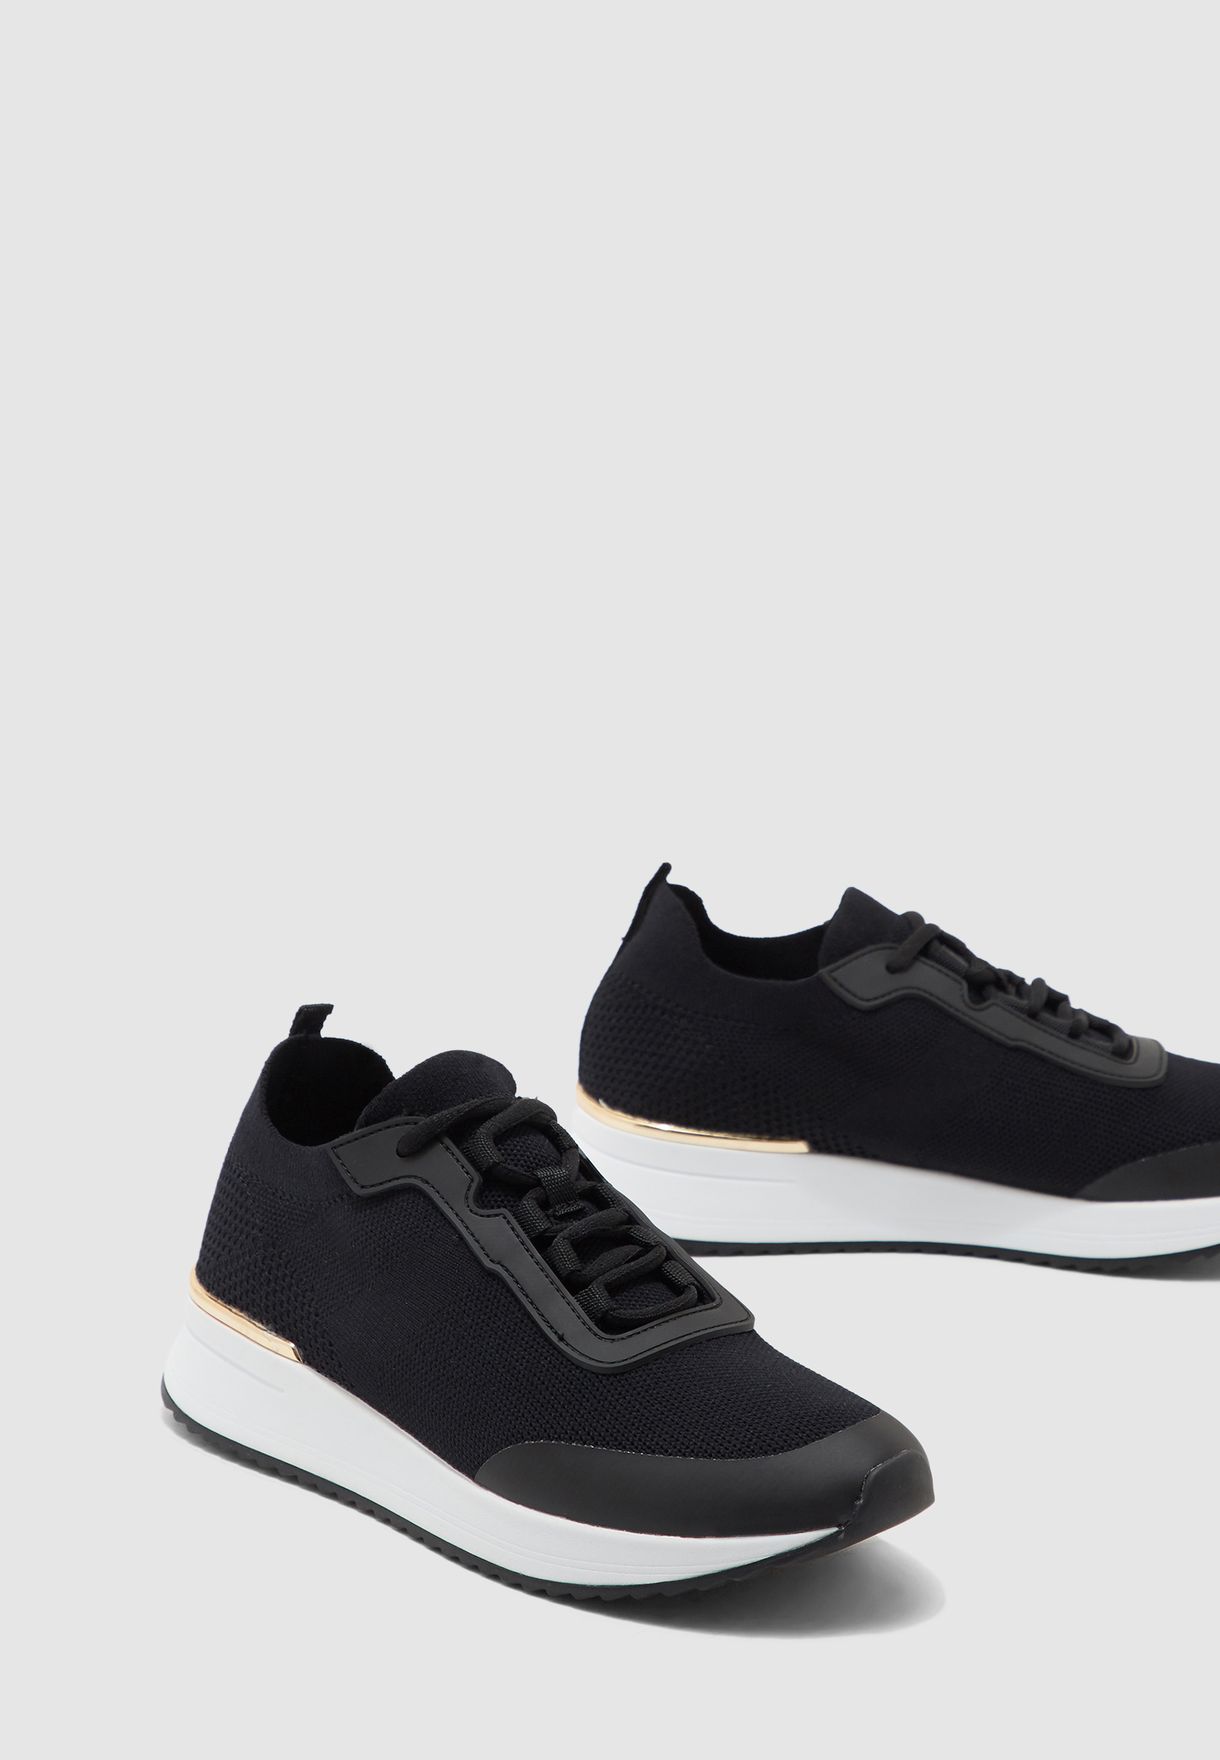 aldo black tennis shoes